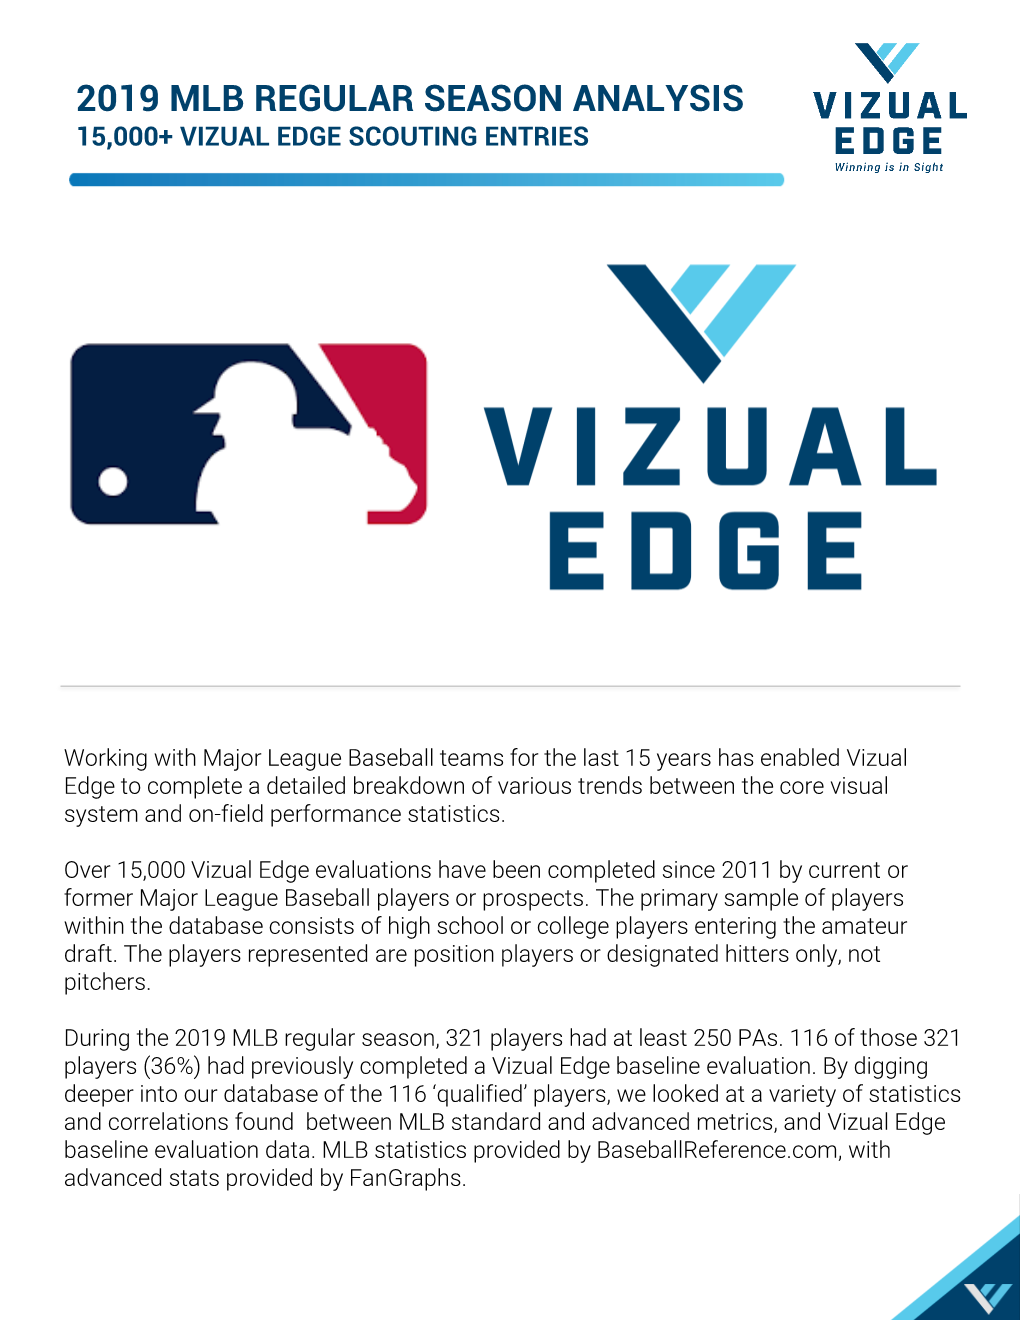 2019 Mlb Regular Season Analysis 15,000+ Vizual Edge Scouting Entries